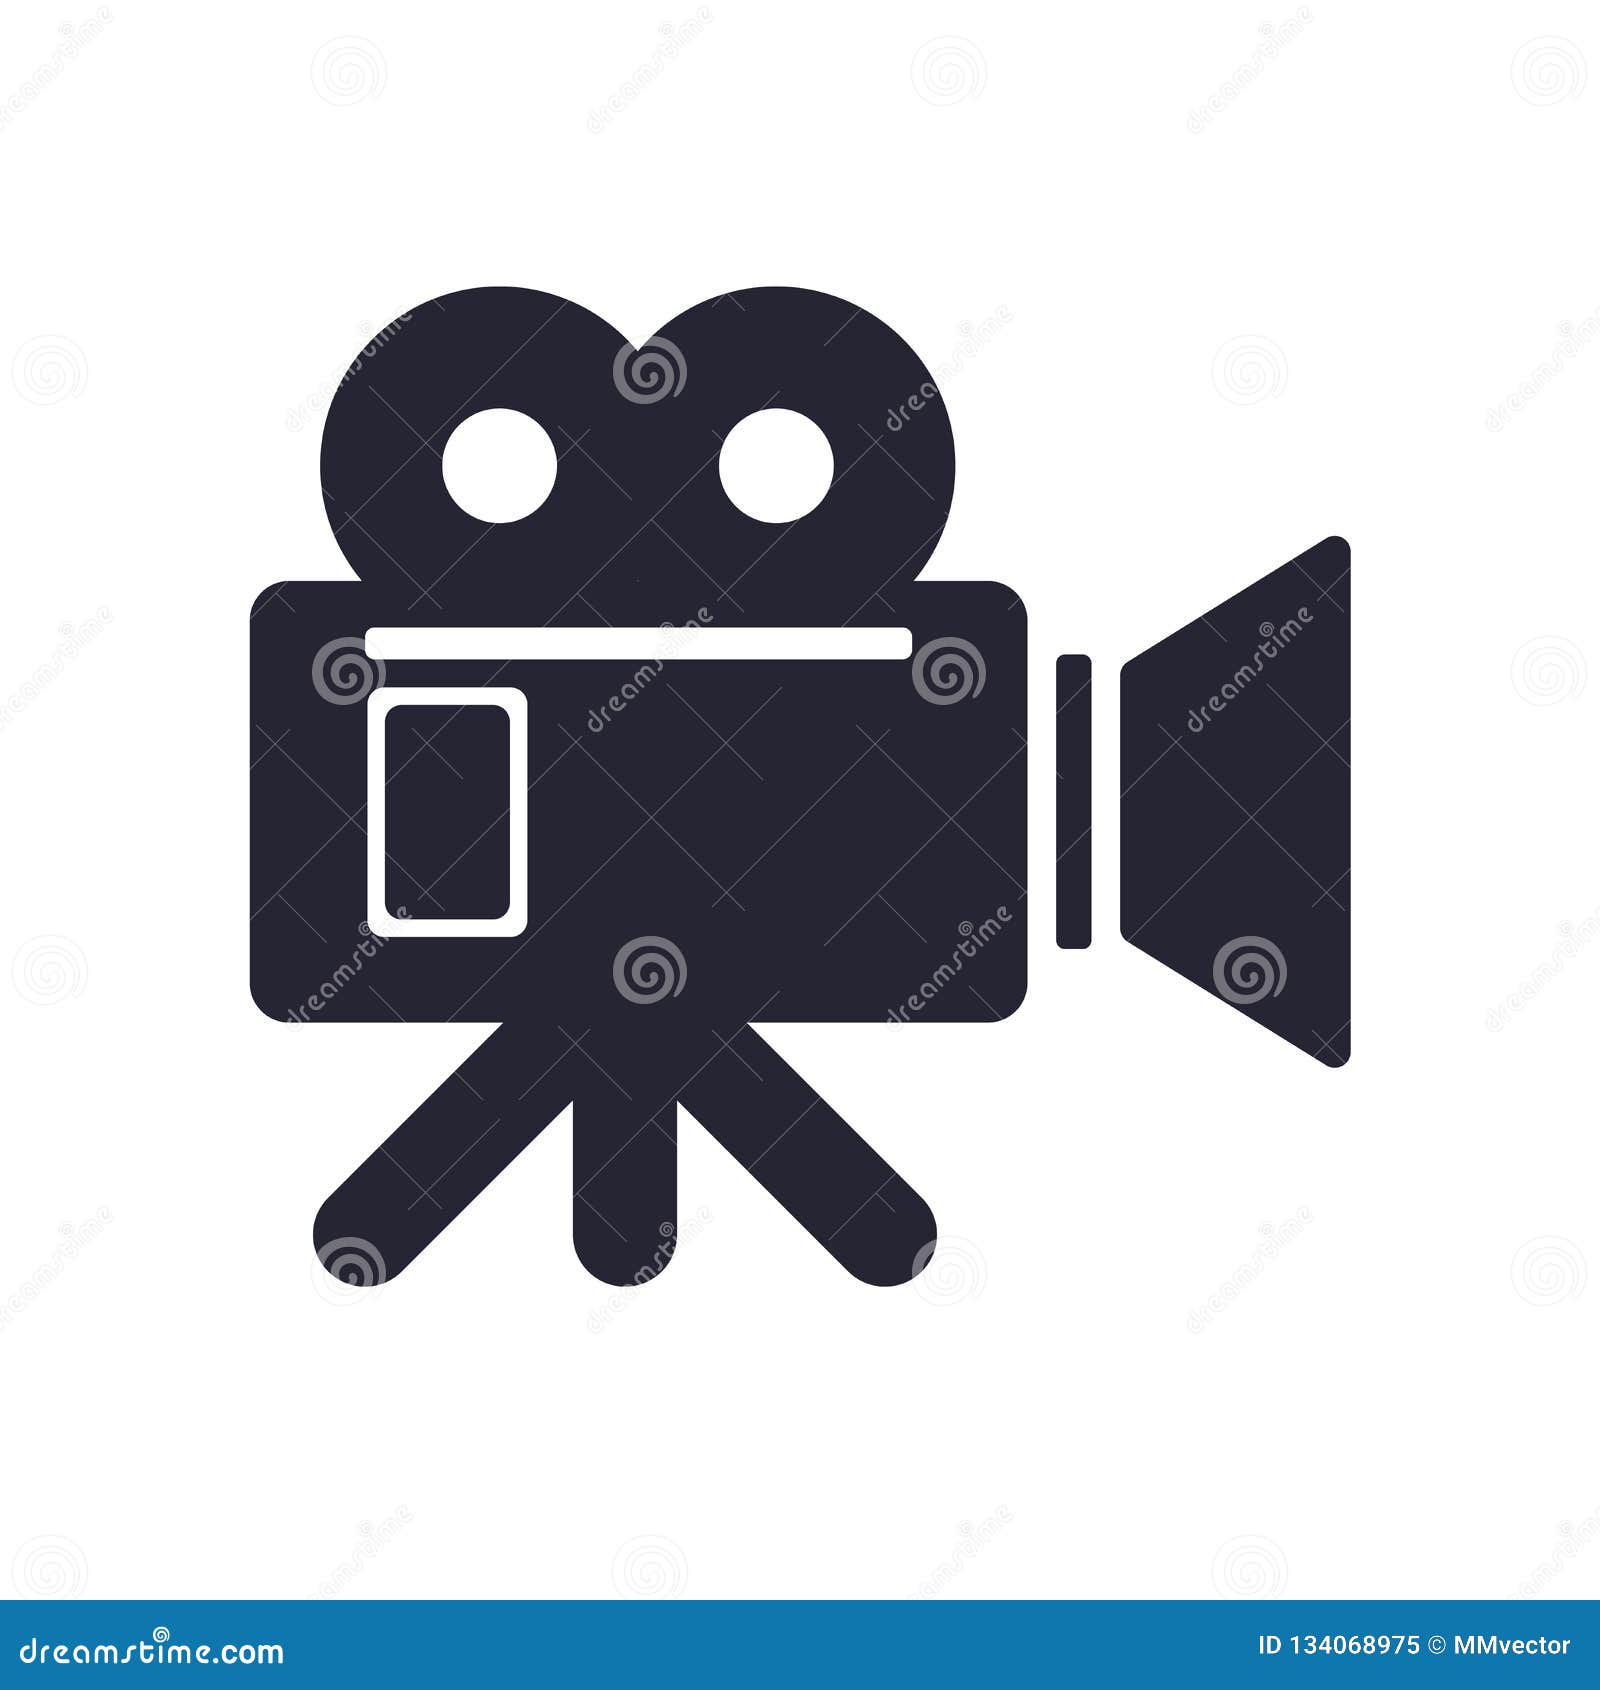 Biểu tượng camera video: Nếu bạn đang tìm kiếm một sản phẩm để ghi hình thậm chí là quay video, hãy tìm kiếm hình ảnh liên quan đến biểu tượng camera video. Biểu tượng này là đại diện cho chất lượng và tính năng tuyệt vời của sản phẩm.